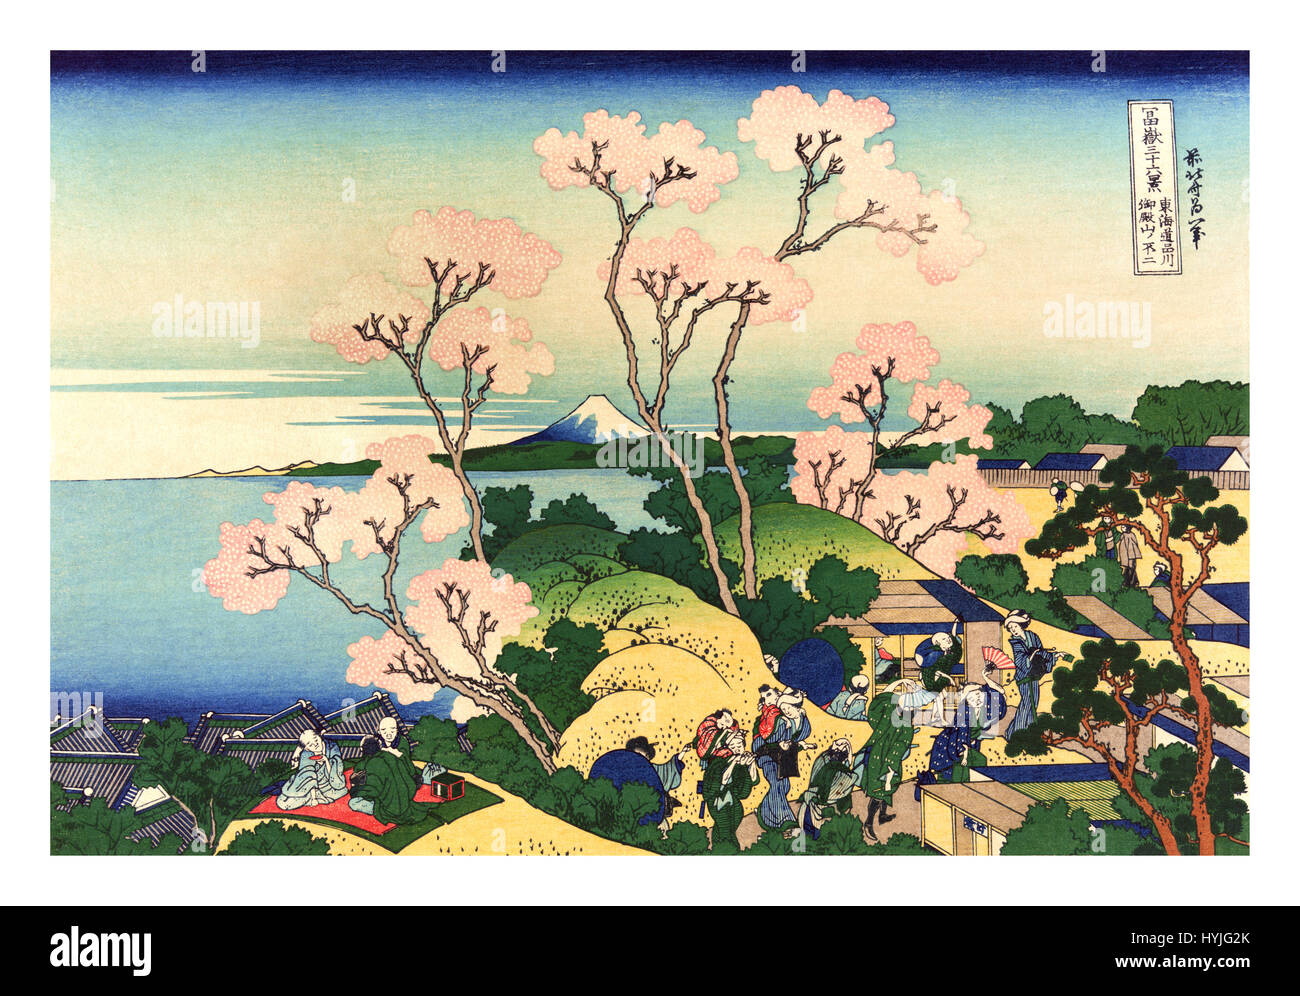 Treinta y seis vistas del Monte Fuji es una serie de impresiones del paisaje por el artista japonés Hokusai (1760-1849). La serie muestra el Monte Fuji desde diferentes lugares y en distintas estaciones y condiciones climáticas. Foto de stock